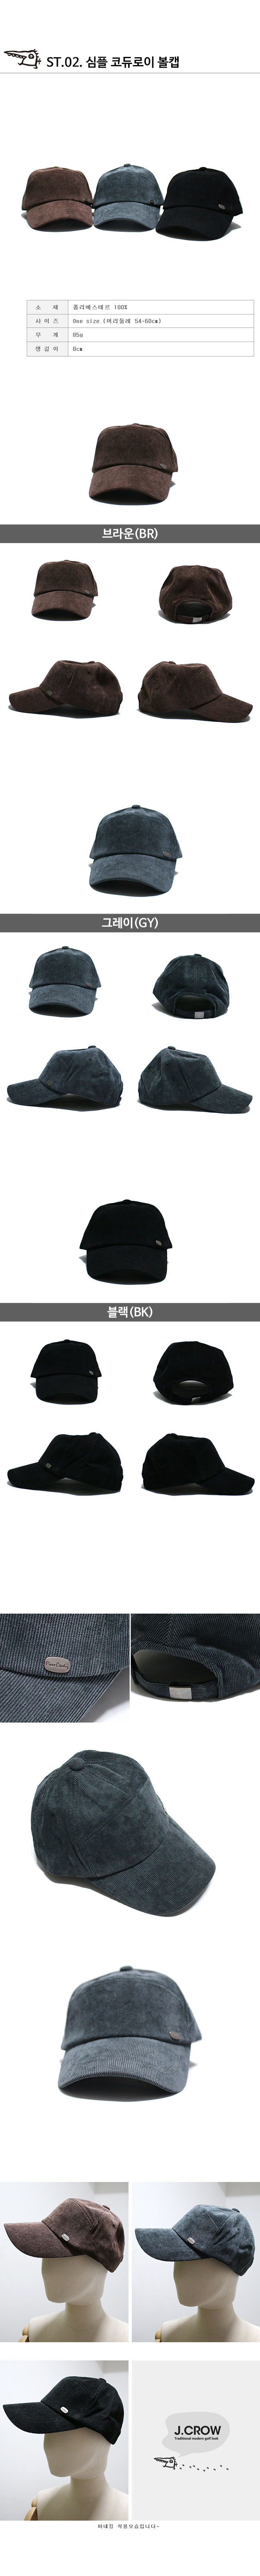 제이크로우 패셔너블한 볼캡스타일 남녀공용 FW 모자 모음 (JCCF-FFHC3320) 상품디테일 상세 설명